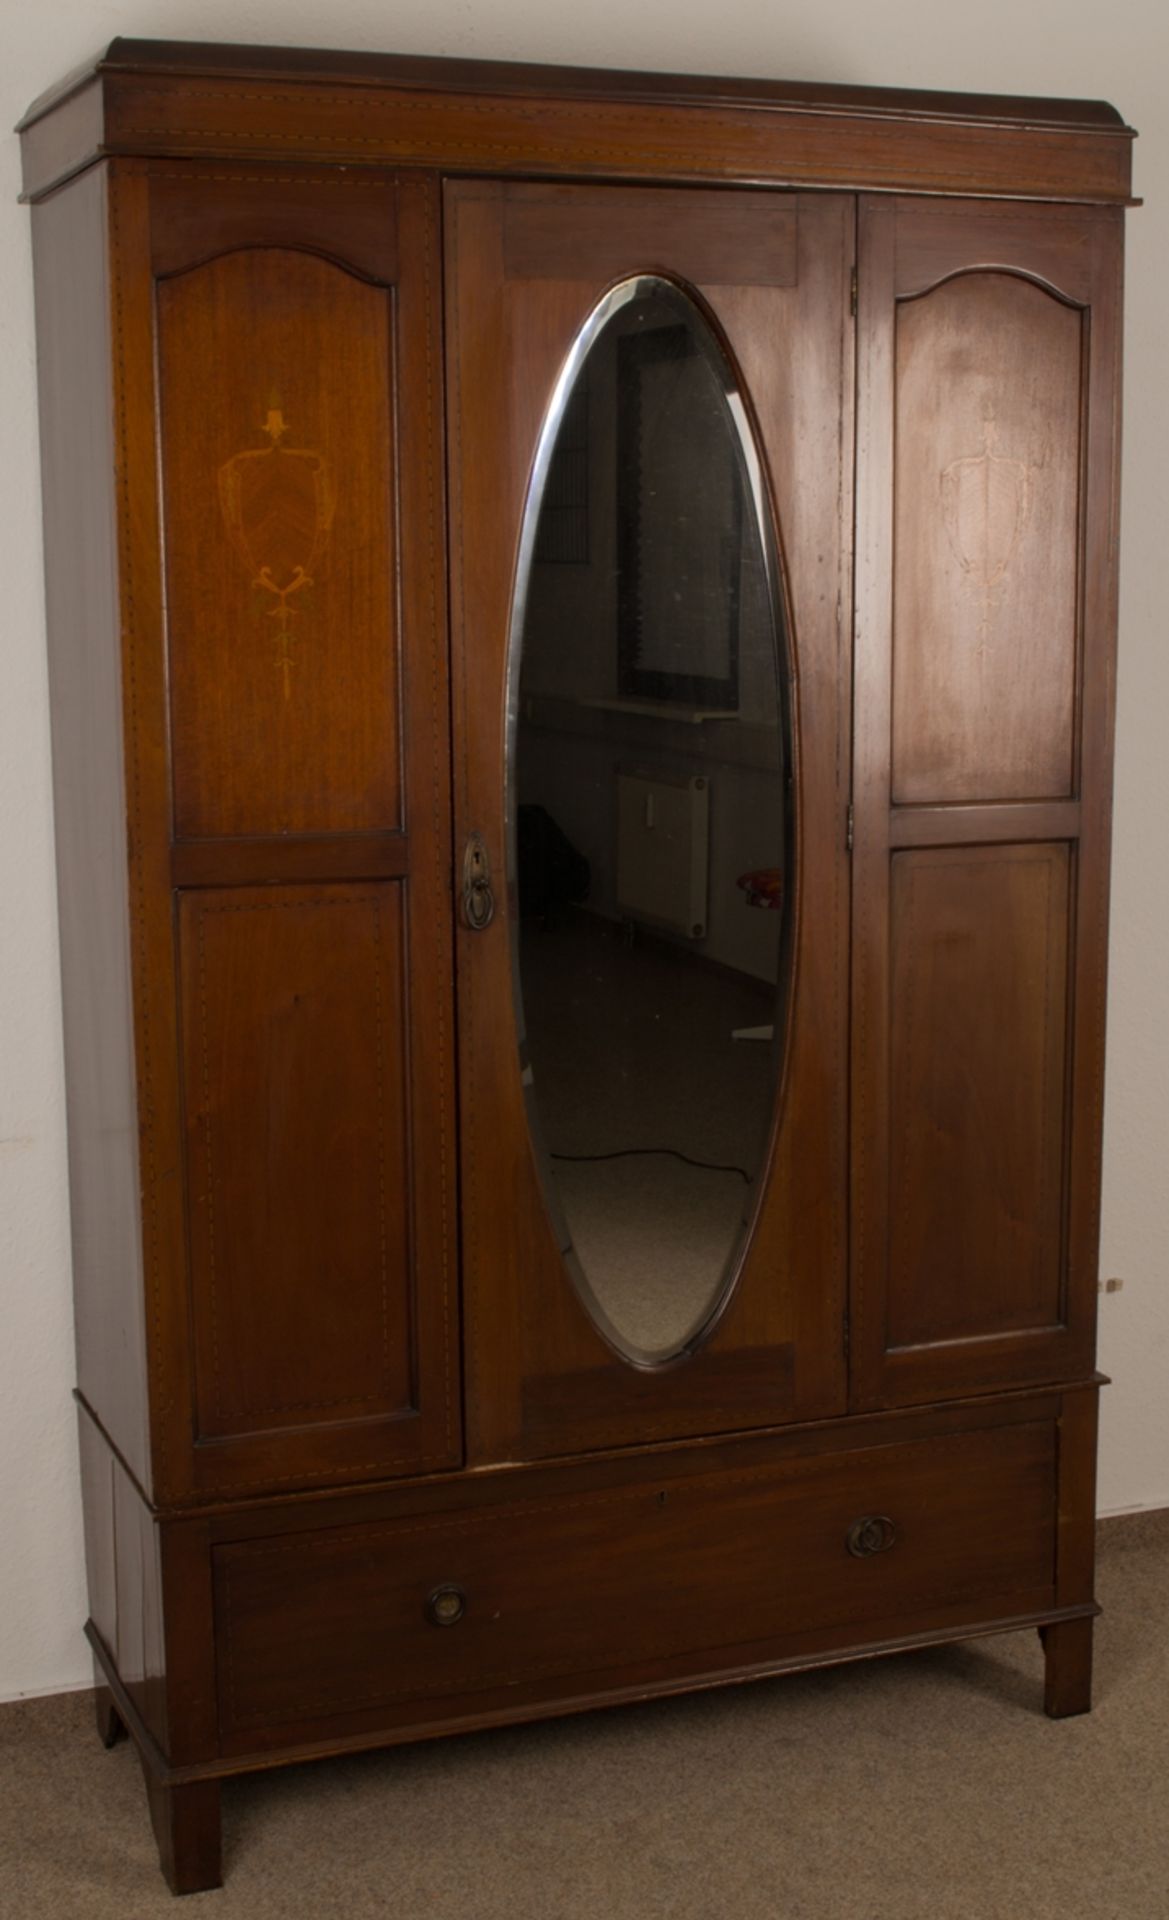 Englischer Garderobenschrank, Mahagoni furnierter, eintüriger Nadelholzkorpus mit ovalem, - Bild 2 aus 7